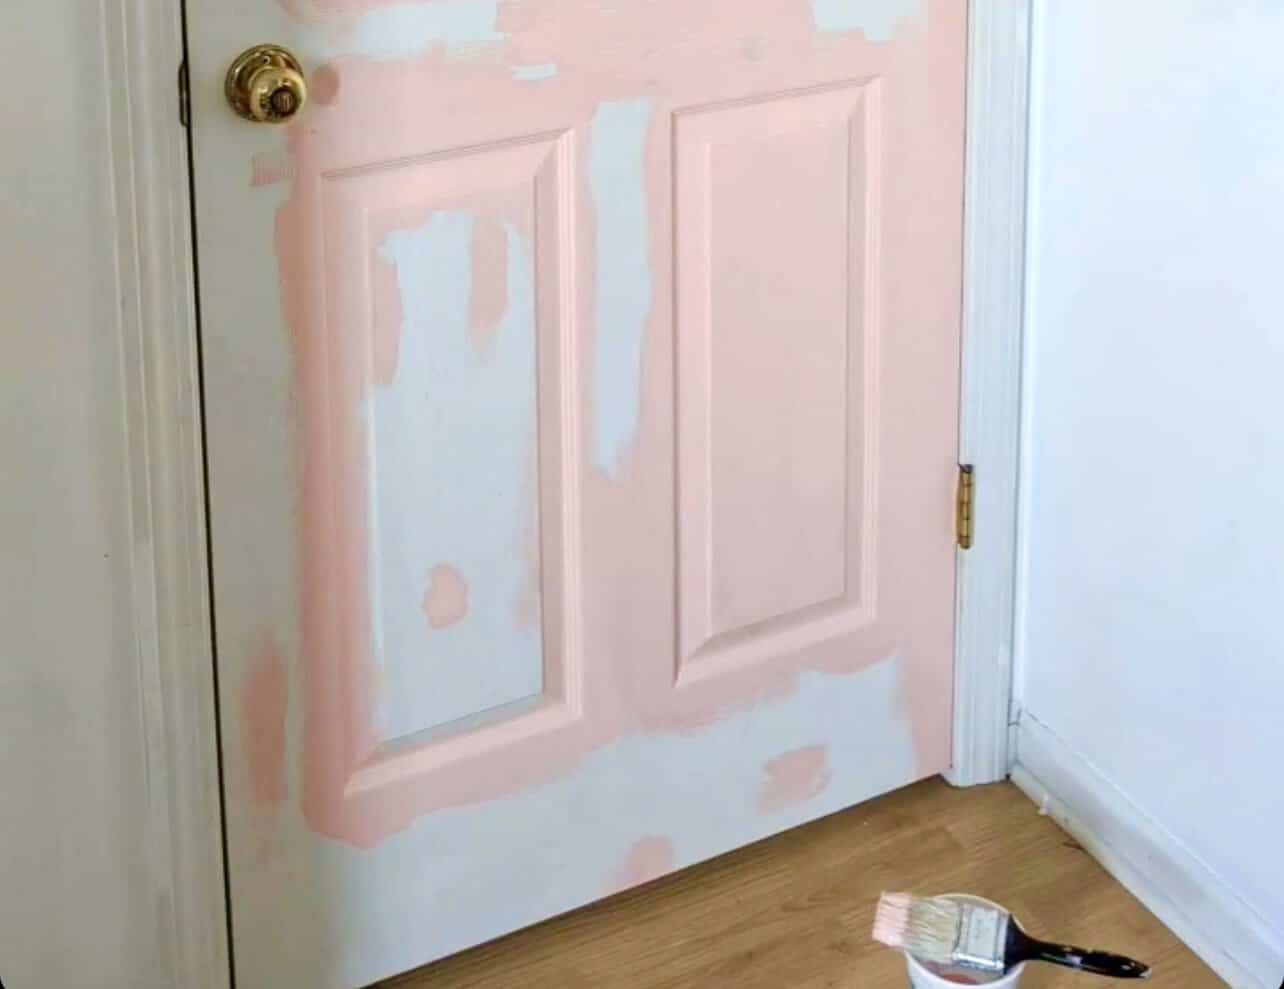 door being painted